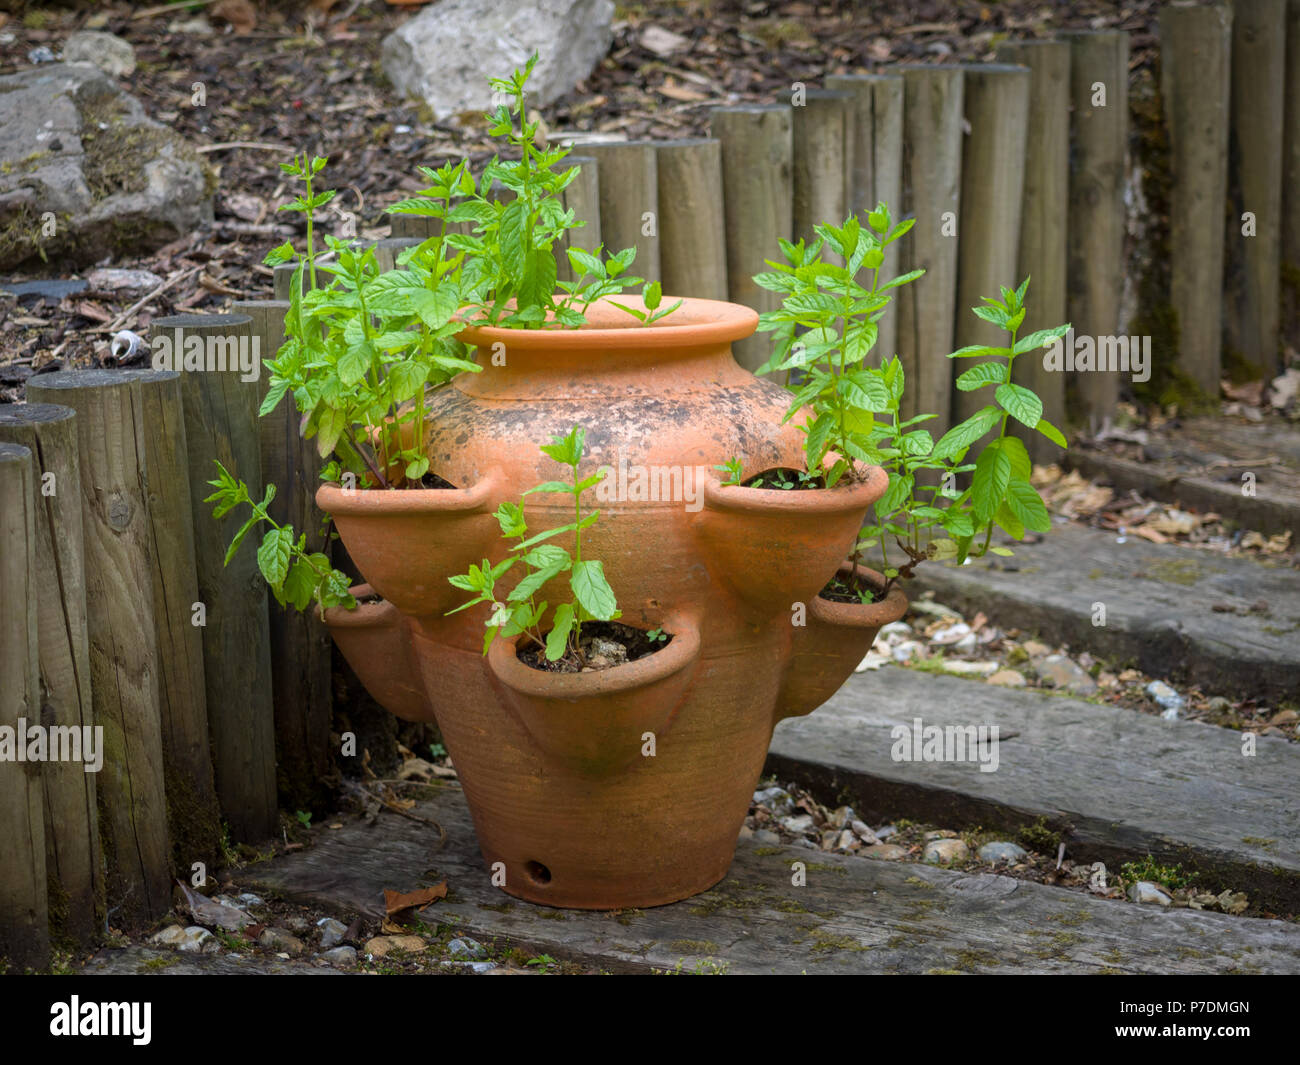 Coltivando zecca da giardino, Mintha sasalinensis, in una pentola di fragole in un piccolo giardino. Foto Stock